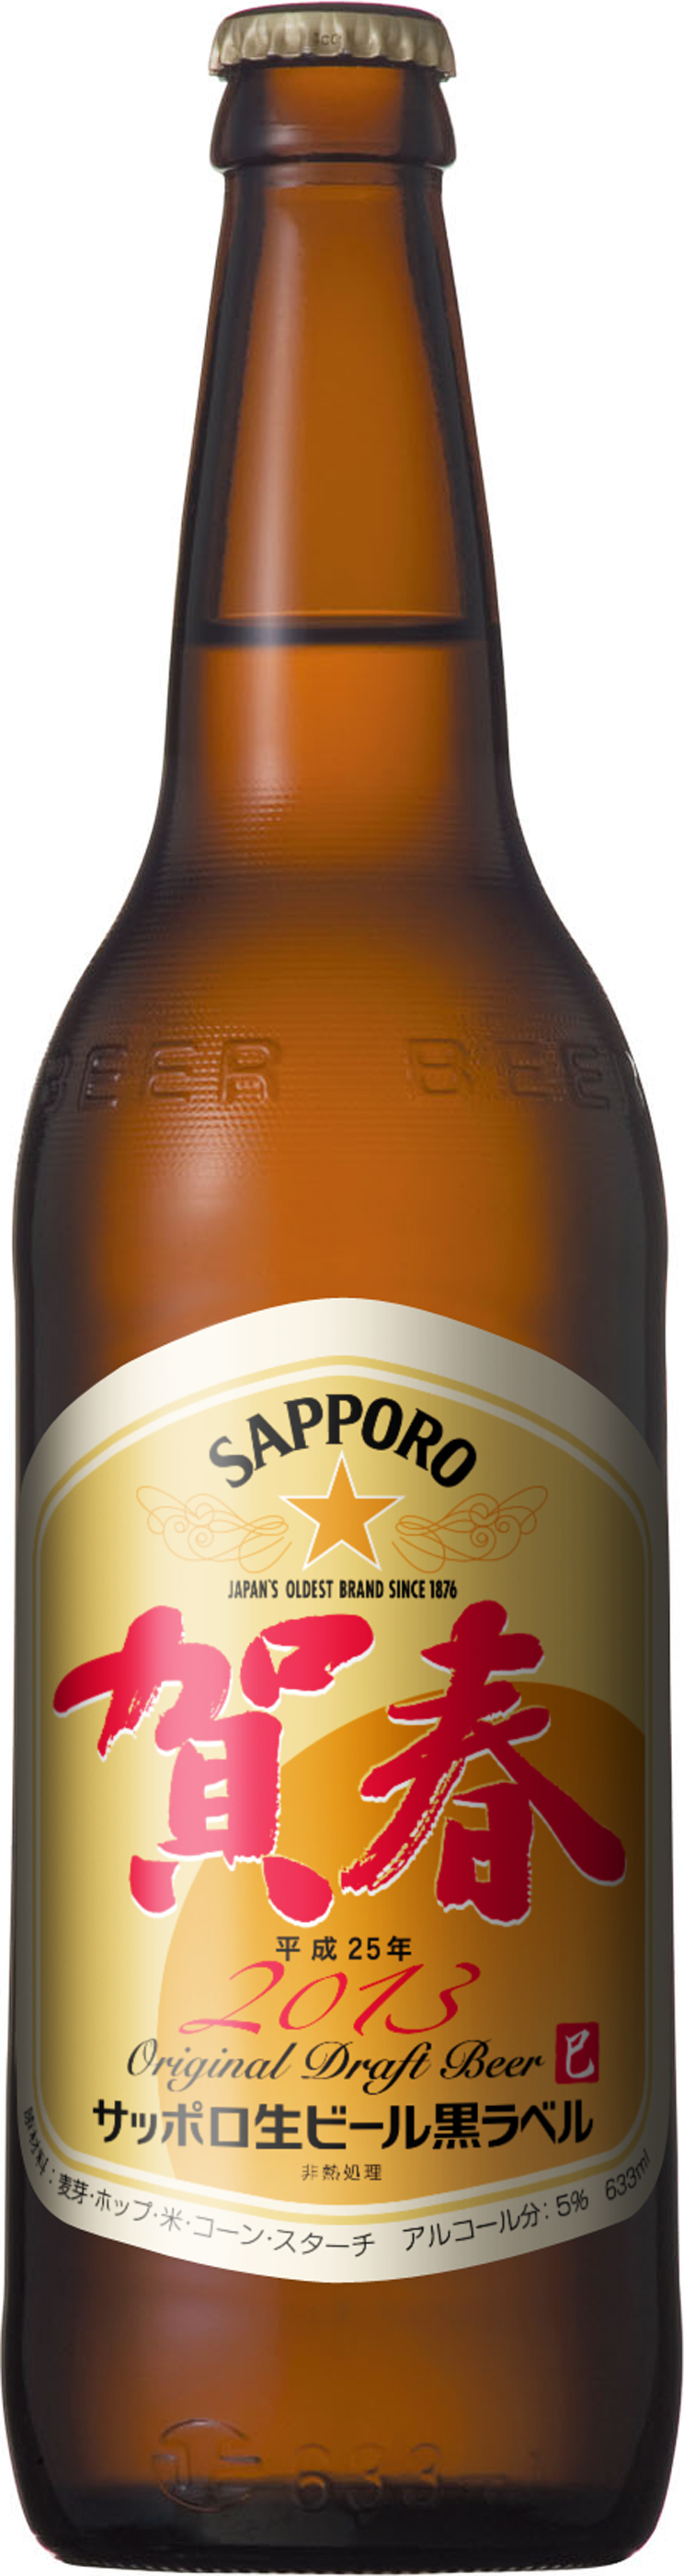 サッポロ生ビール黒ラベル 賀春 発売 ニュースリリース サッポロビール